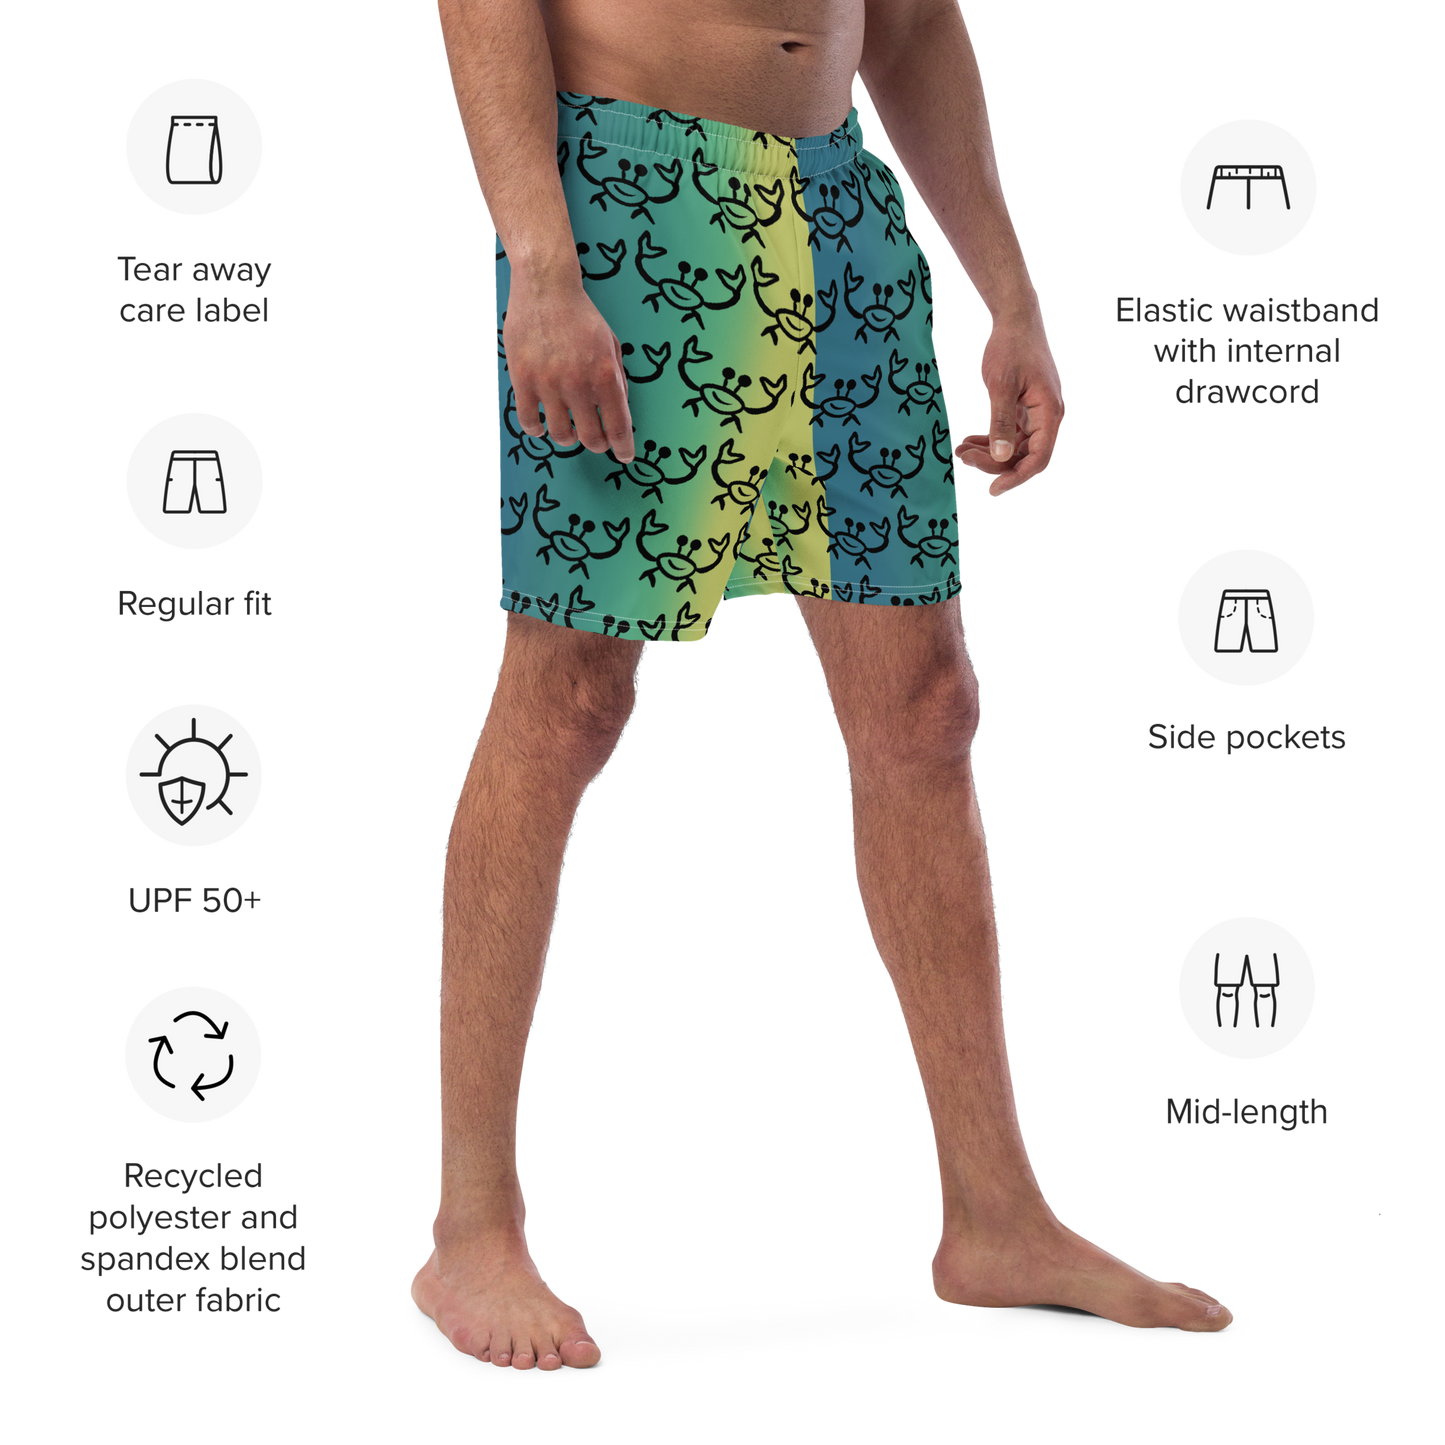 Crabby Mahi Men's swim trunks